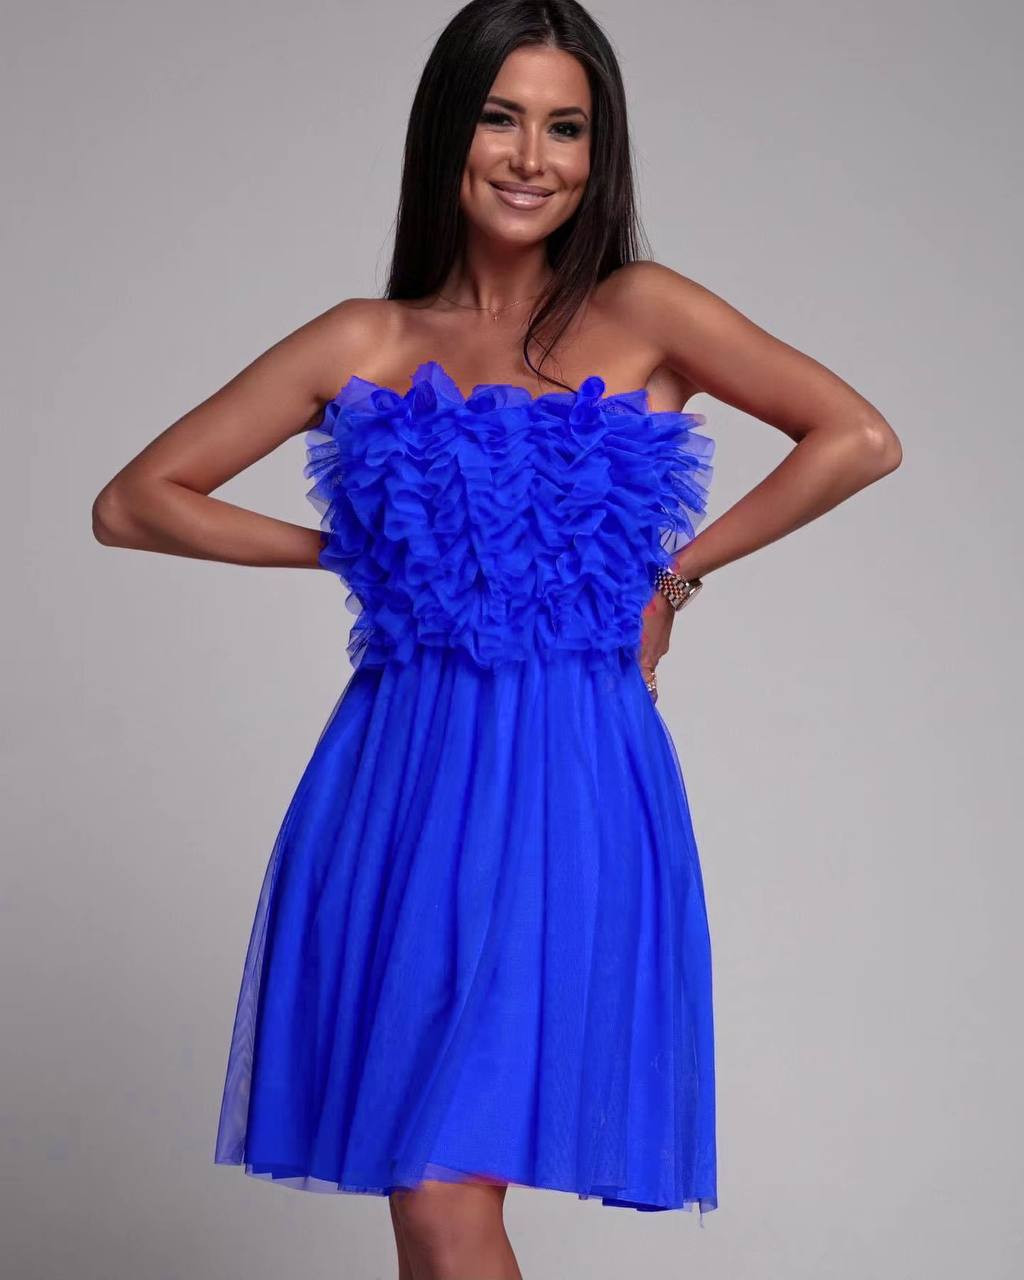 Γυναικείο στραπλες φόρεμα 5126 μπλε